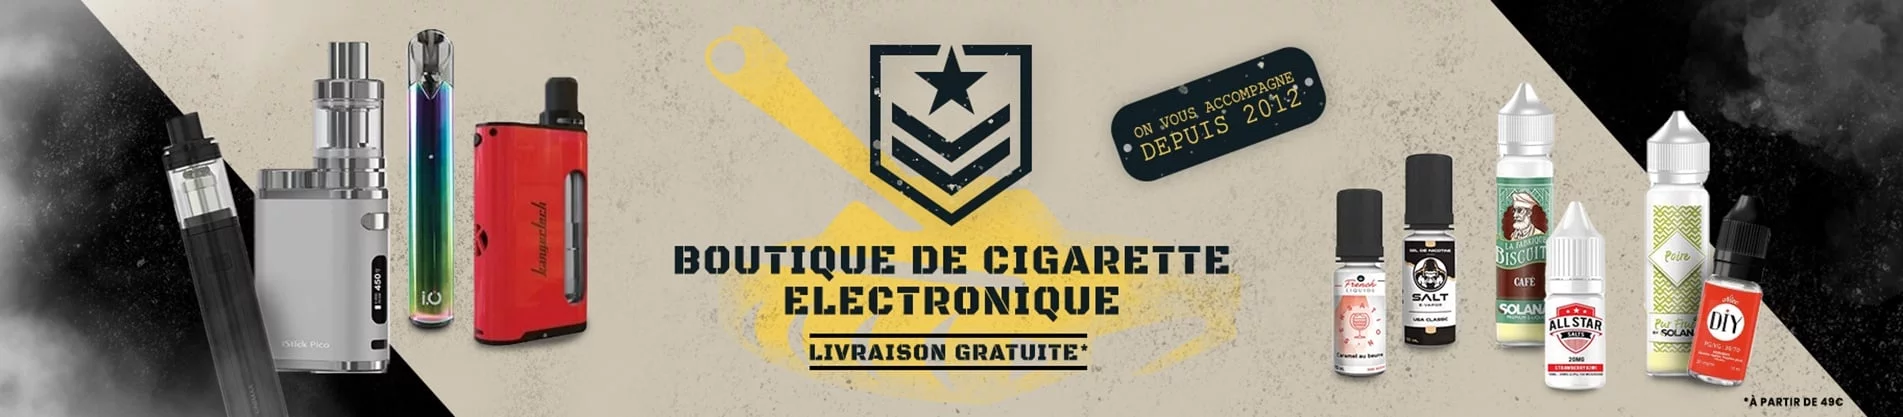 banniere vapotank 1 - Boutique de cigarette électronique, eliquides à pas cher.